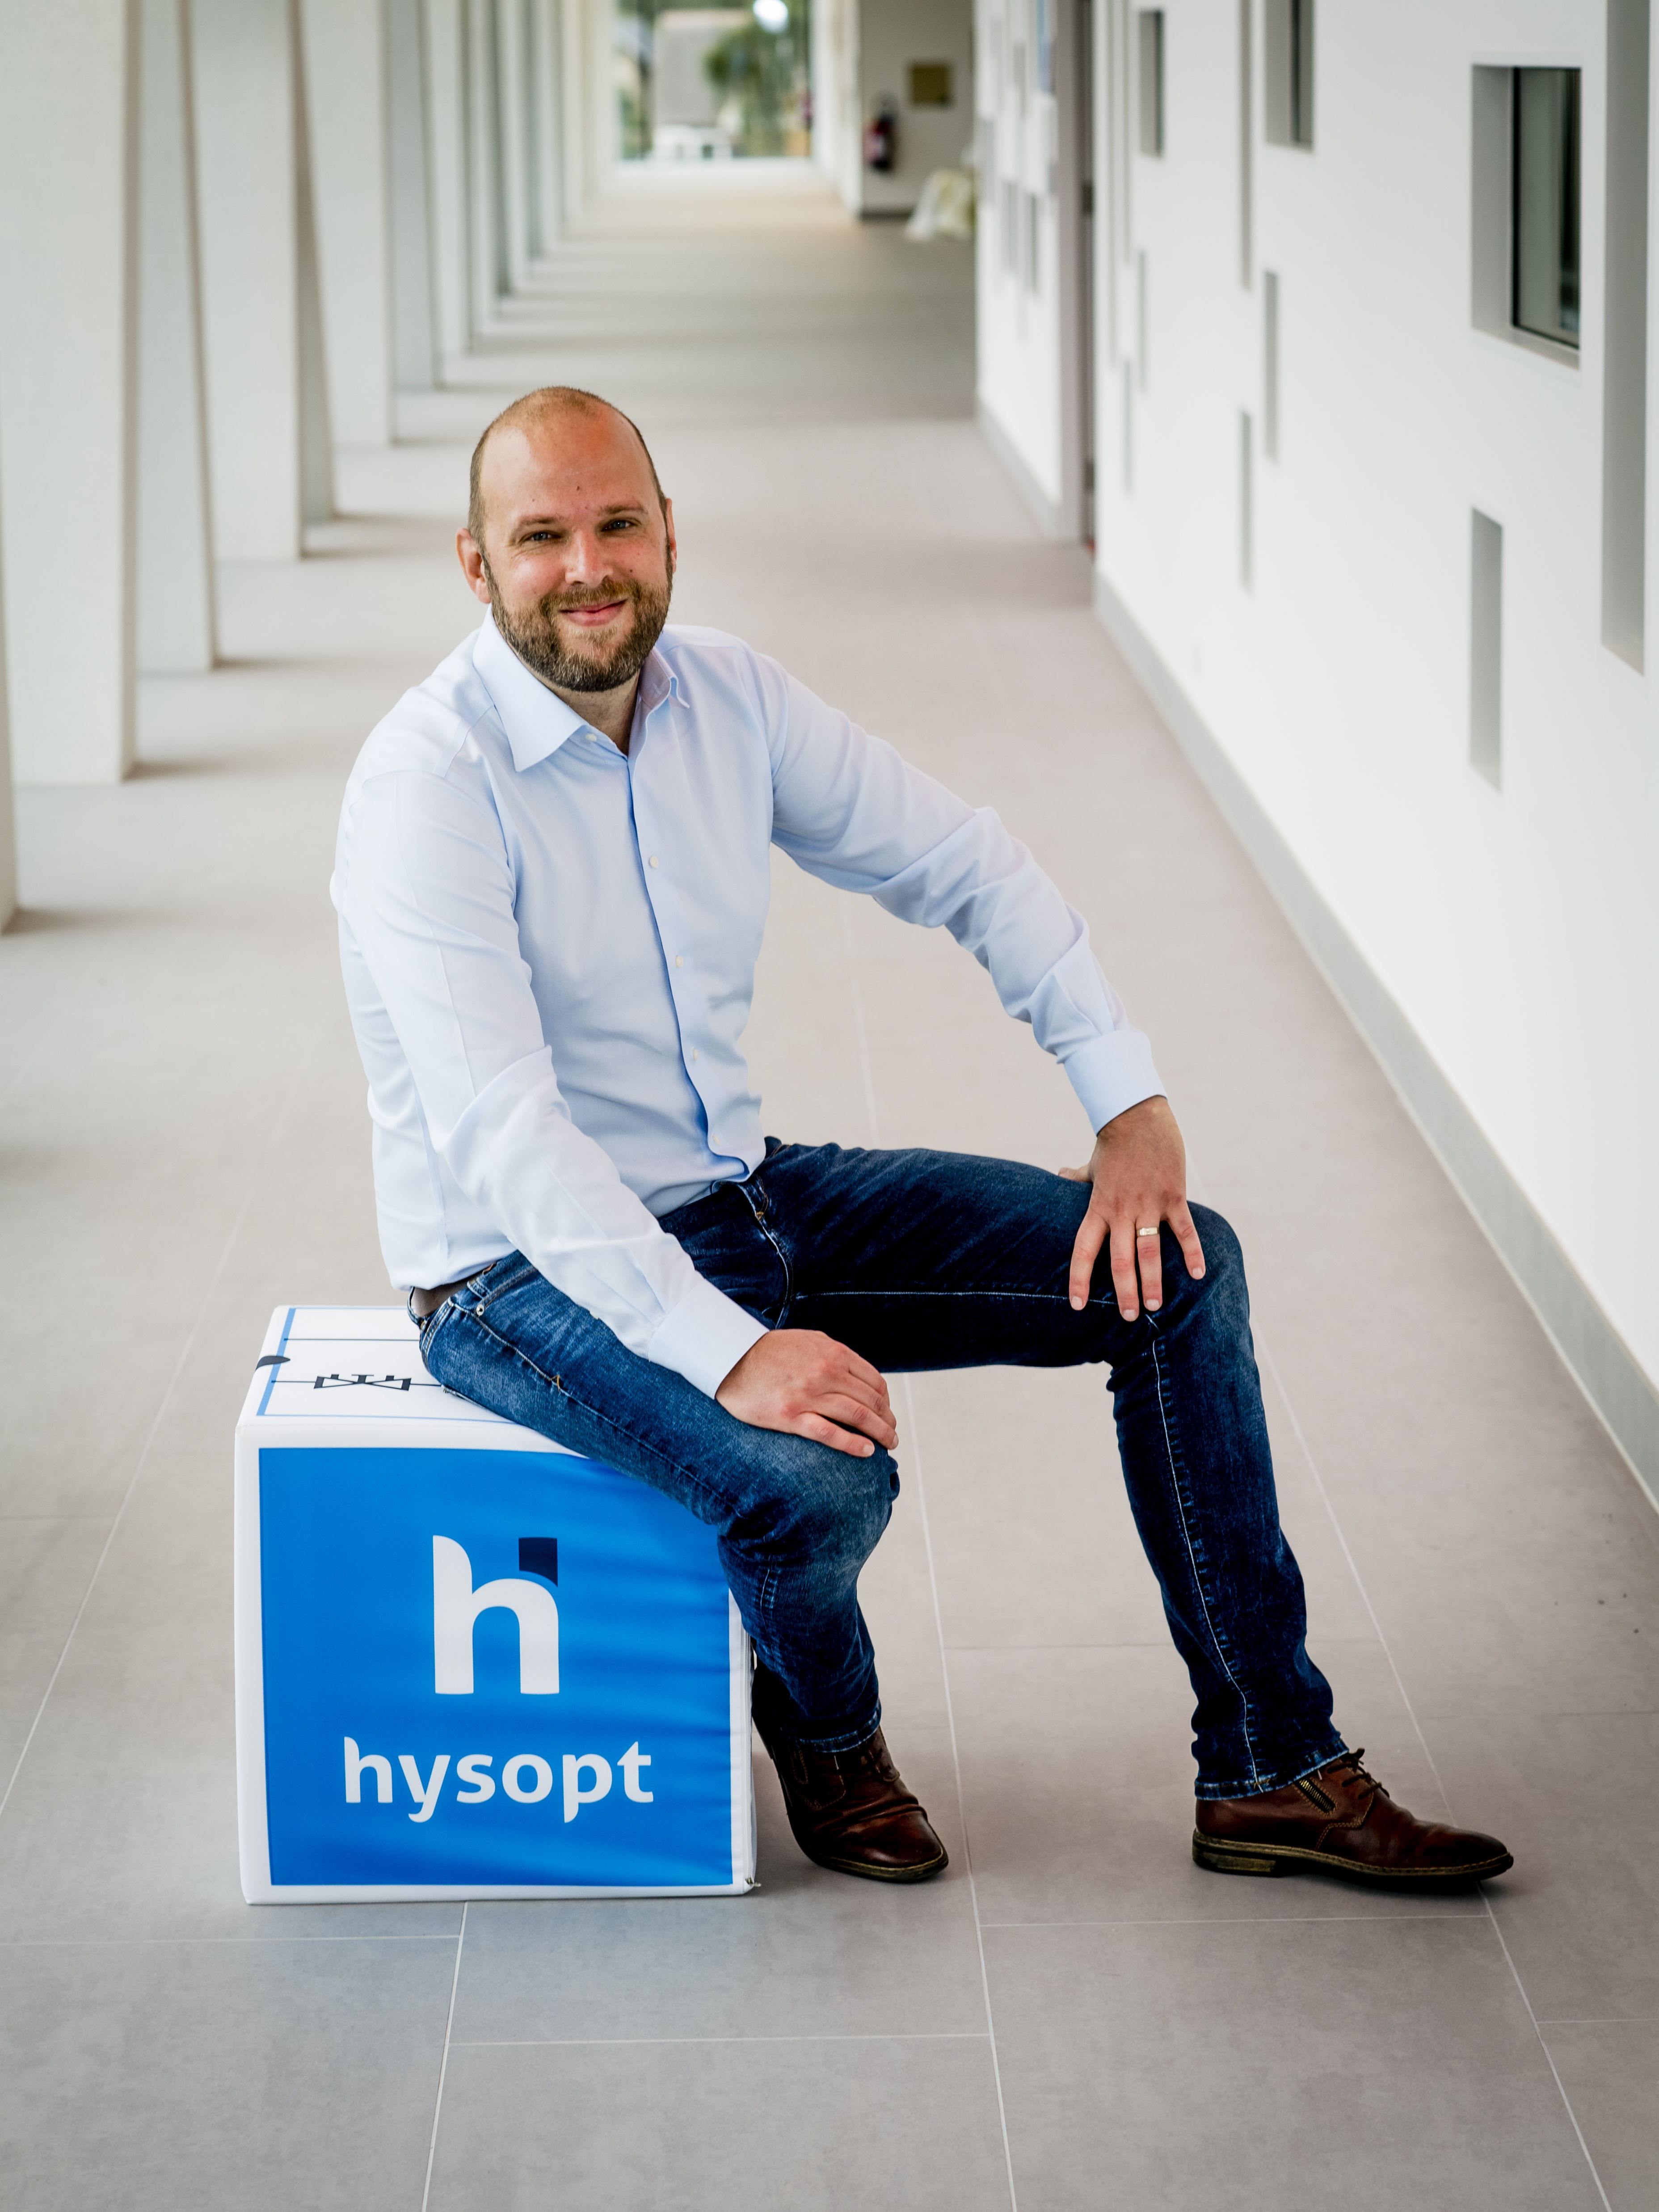 Roel Vandenbulcke, le fondateur et CEO de Hysopt